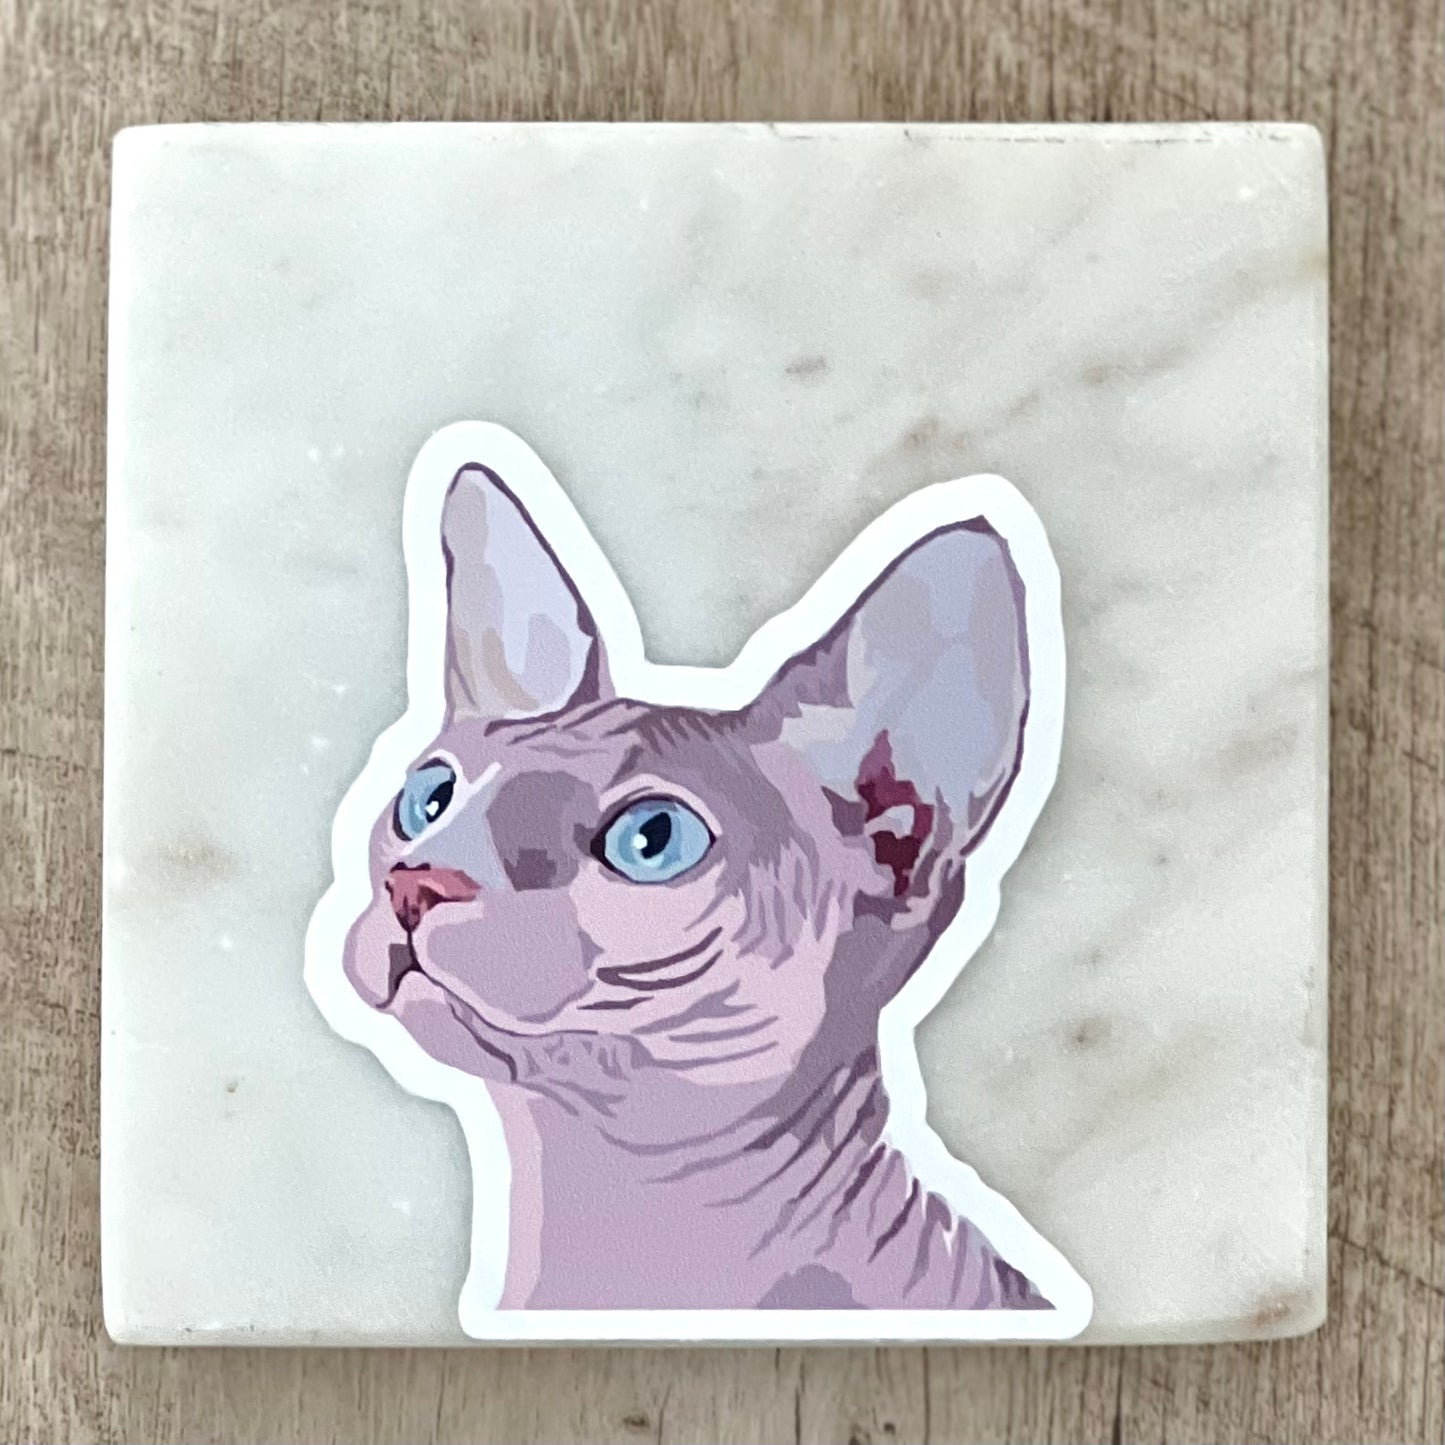 Sphynx cat sticker, 3", die cut, waterproof, vinyl